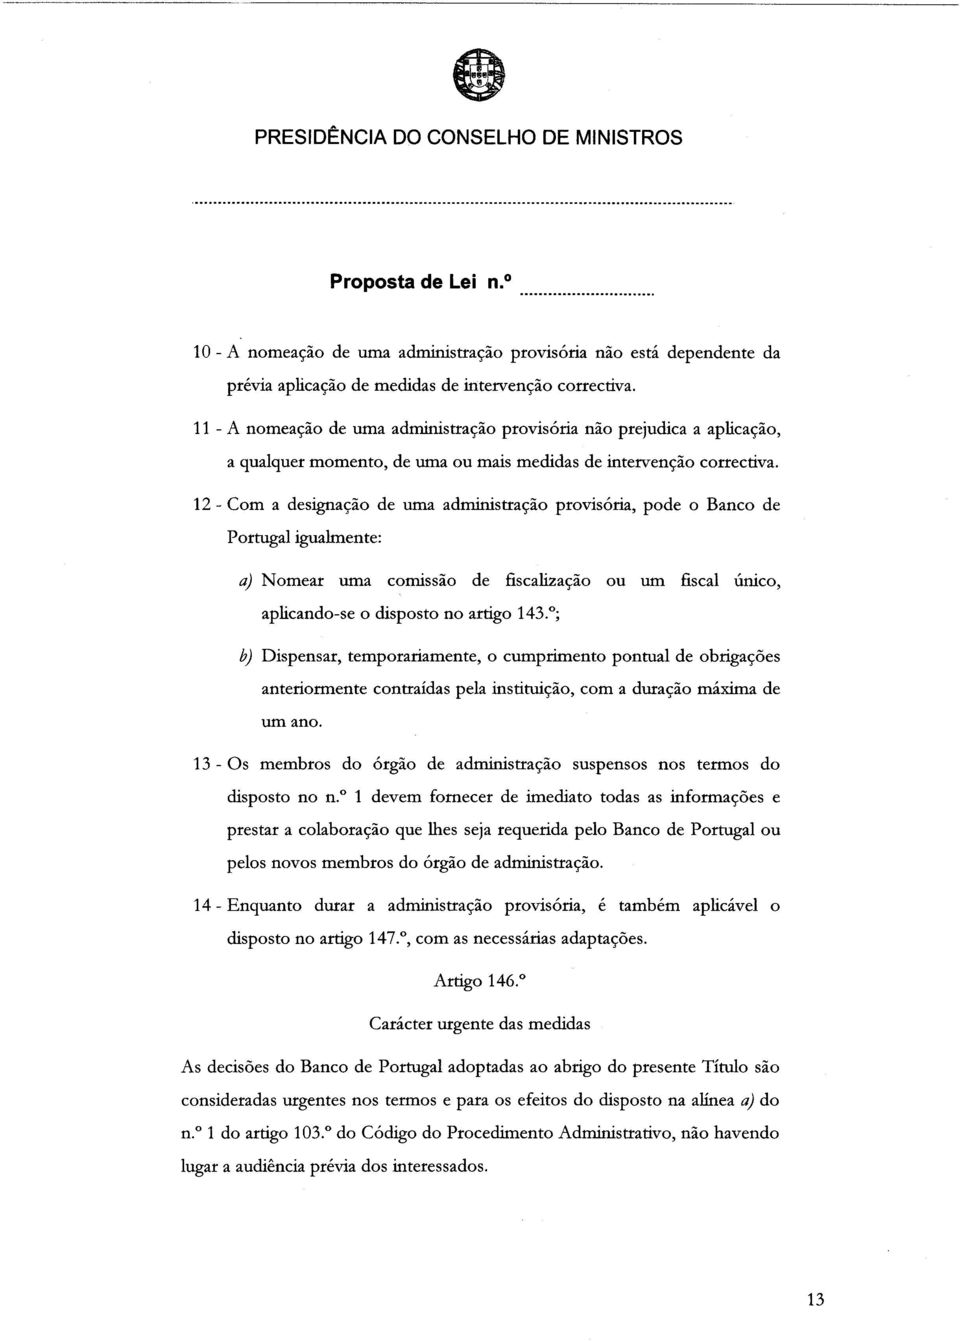 12 - Com a designação de uma administração provisória, pode o Banco de Portugal igualmente: a) Nomear uma comissão de fiscalização ou um fiscal único, aplicando-se o disposto no artigo 143.